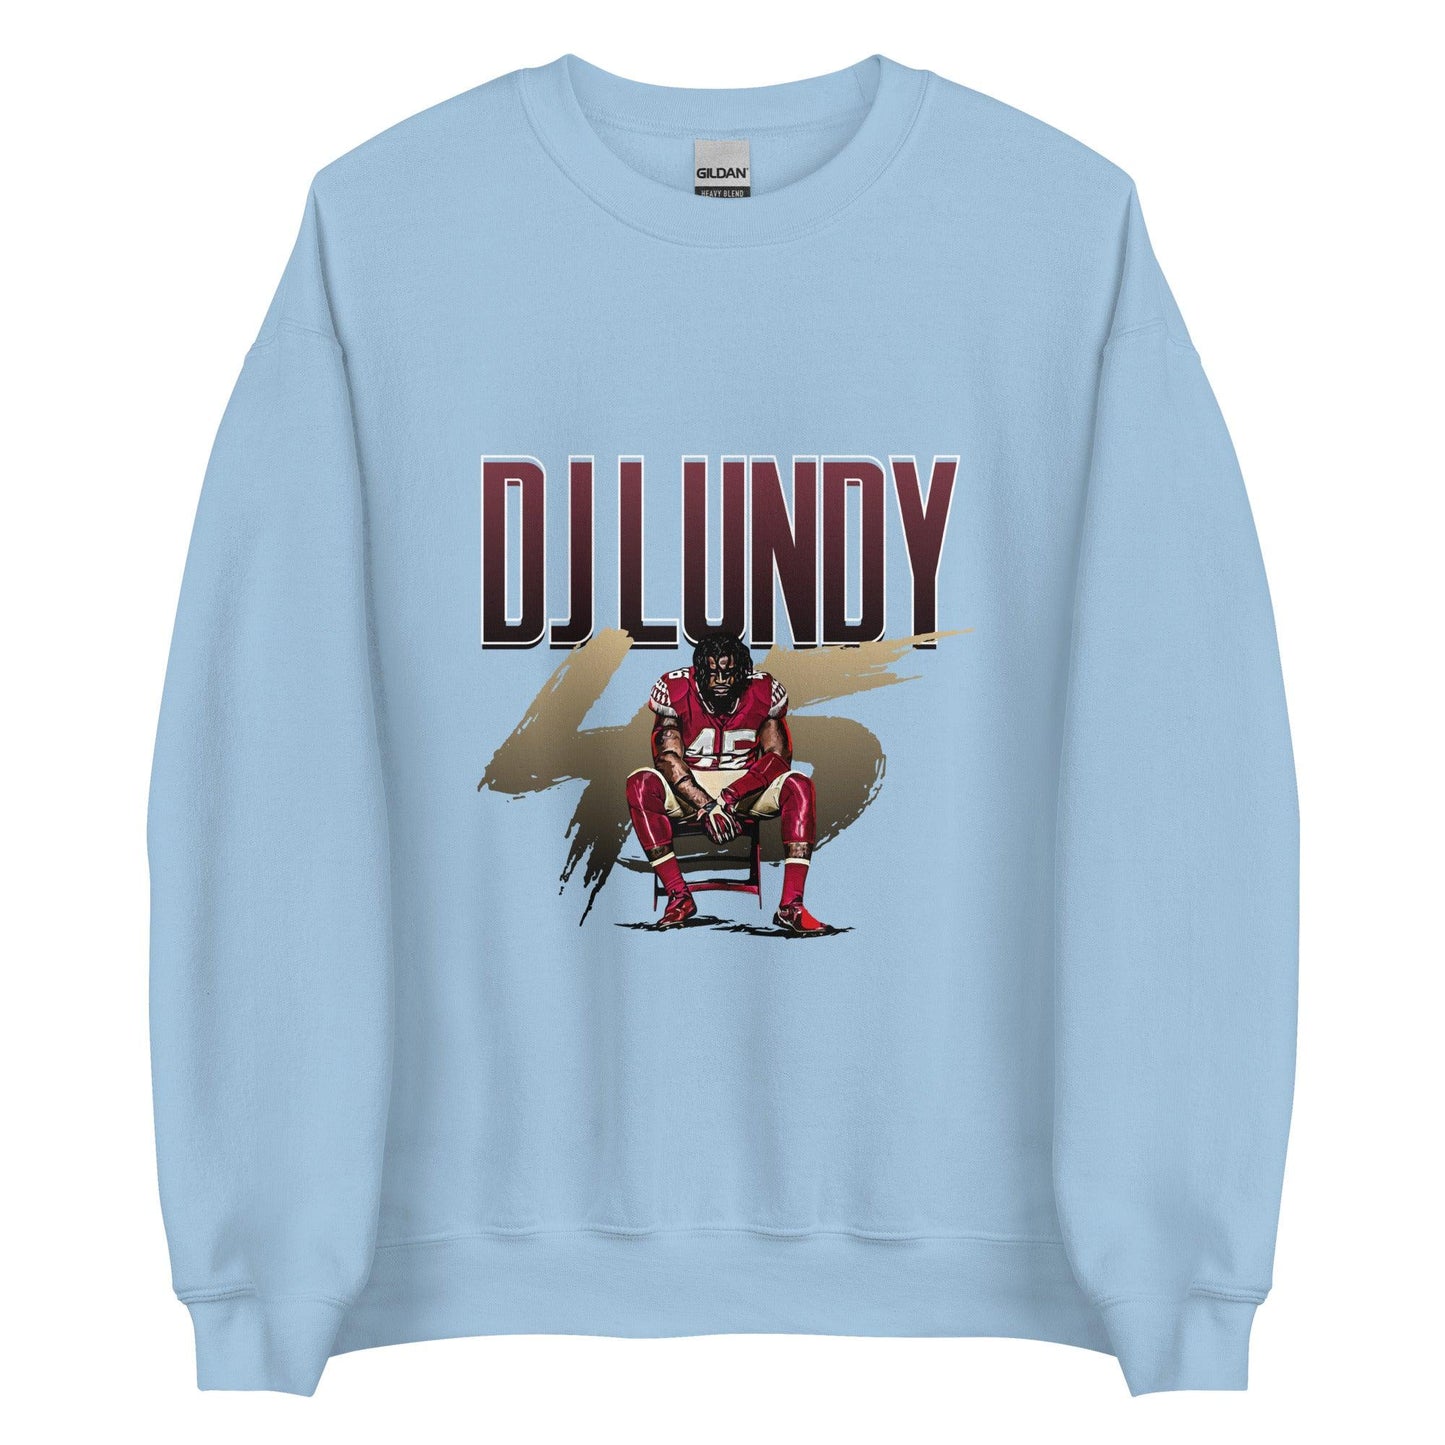 DJ Lundy "Gameday" Sweatshirt - Fan Arch